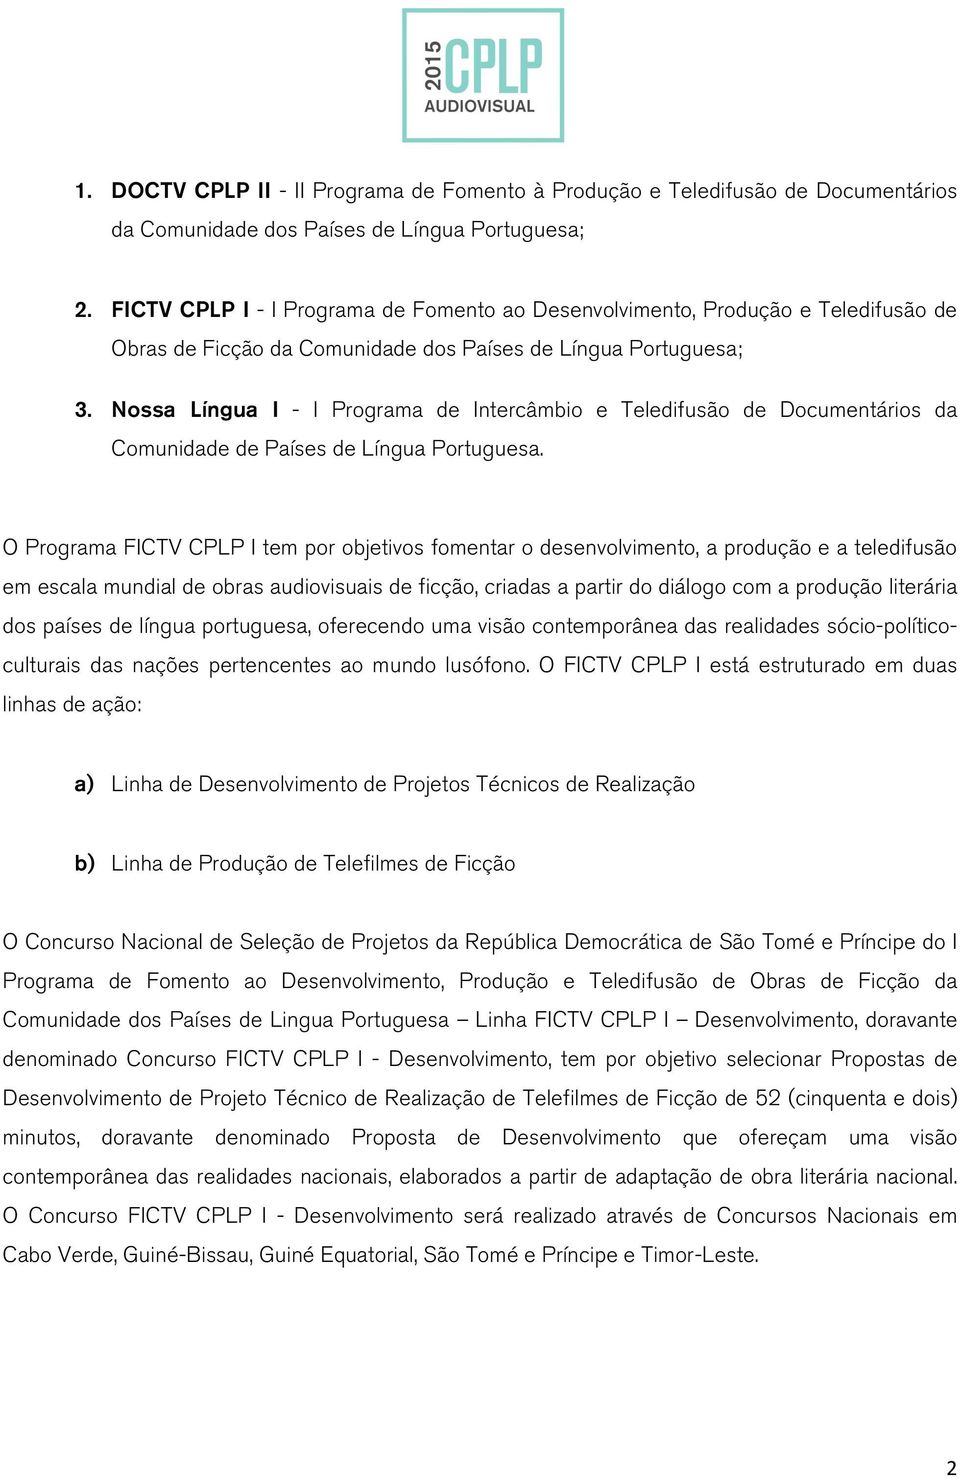 Nossa Língua I - I Programa de Intercâmbio e Teledifusão de Documentários da Comunidade de Países de Língua Portuguesa.